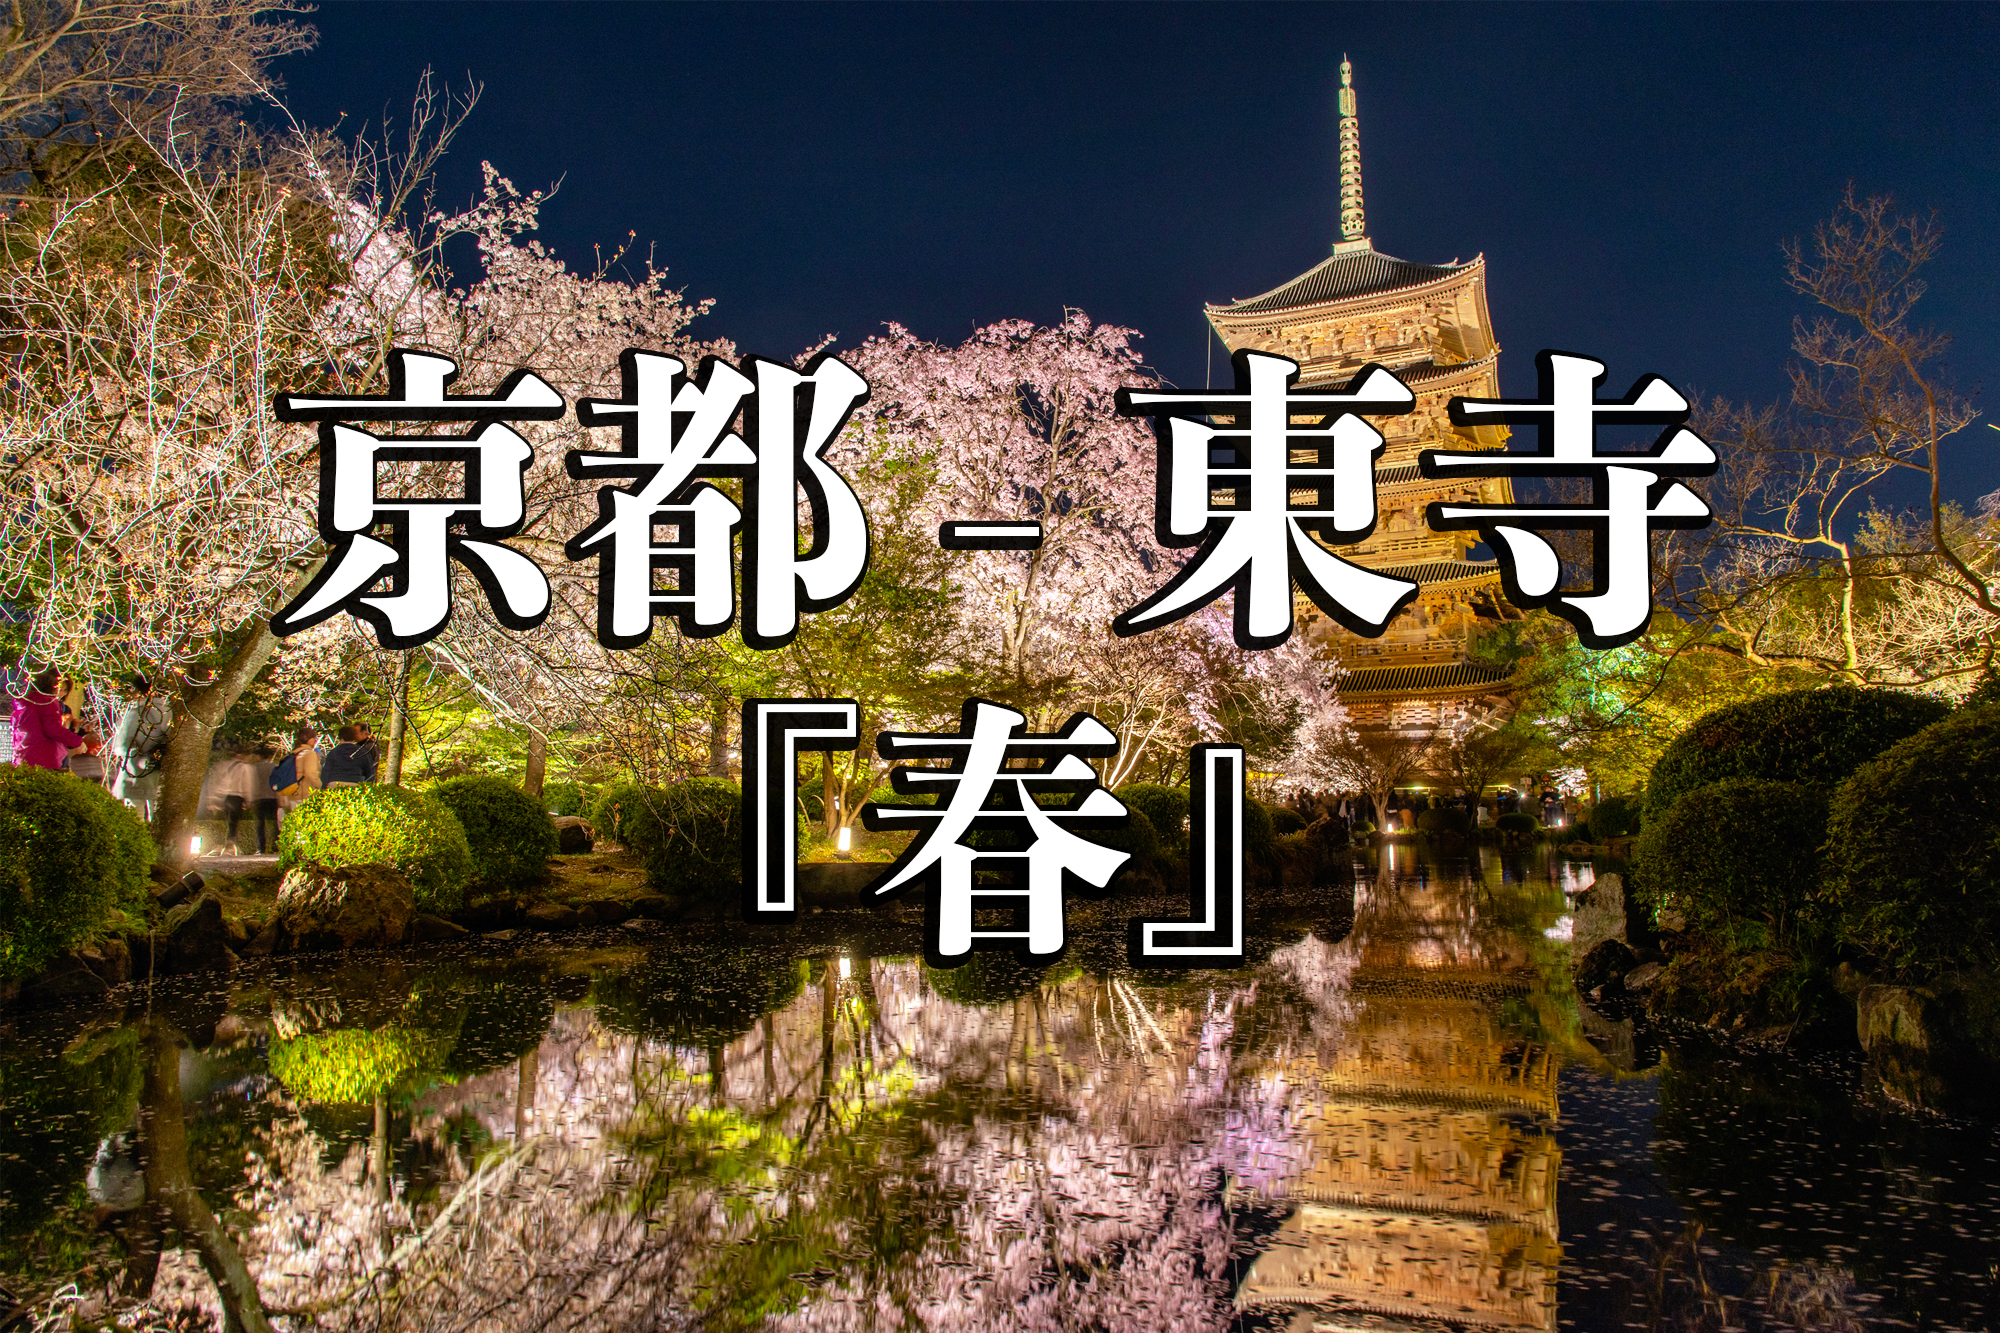 京都府 東寺 水面に映る五重塔と桜の美しい景色 京都の春におすすめ桜写真スポット 撮影した写真の紹介 アクセスや駐車場など 写真や映像で紹介する関西 近畿の絶景カメラ 観光スポット